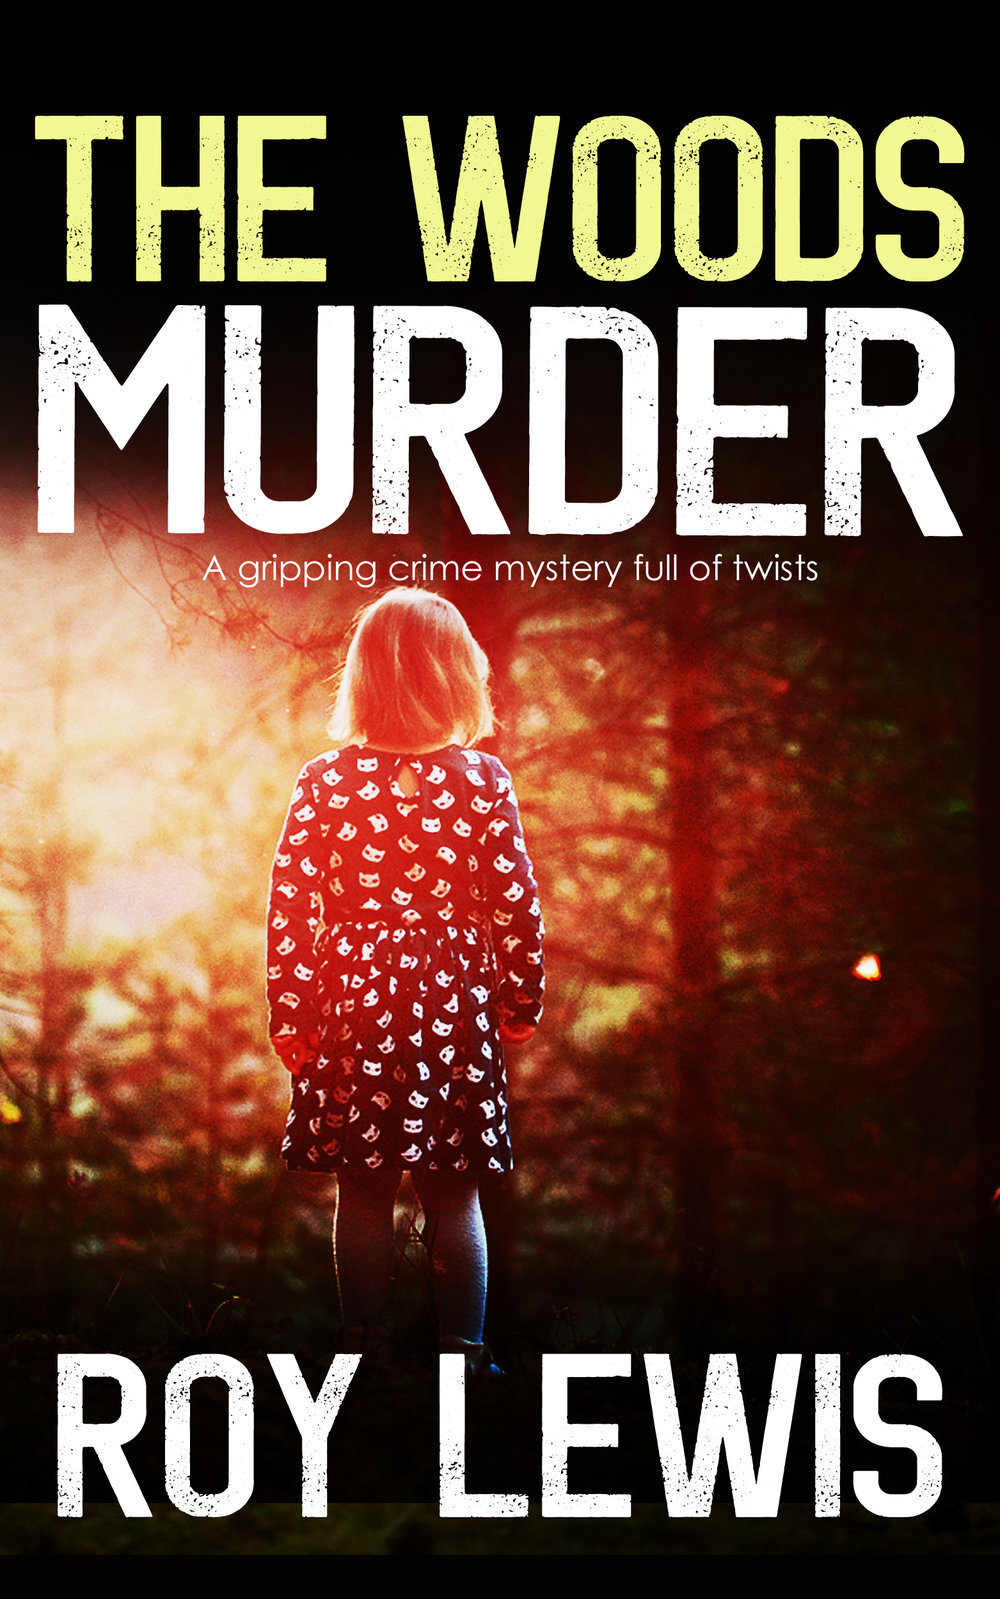 The+Woods+Murder+cover.jpg